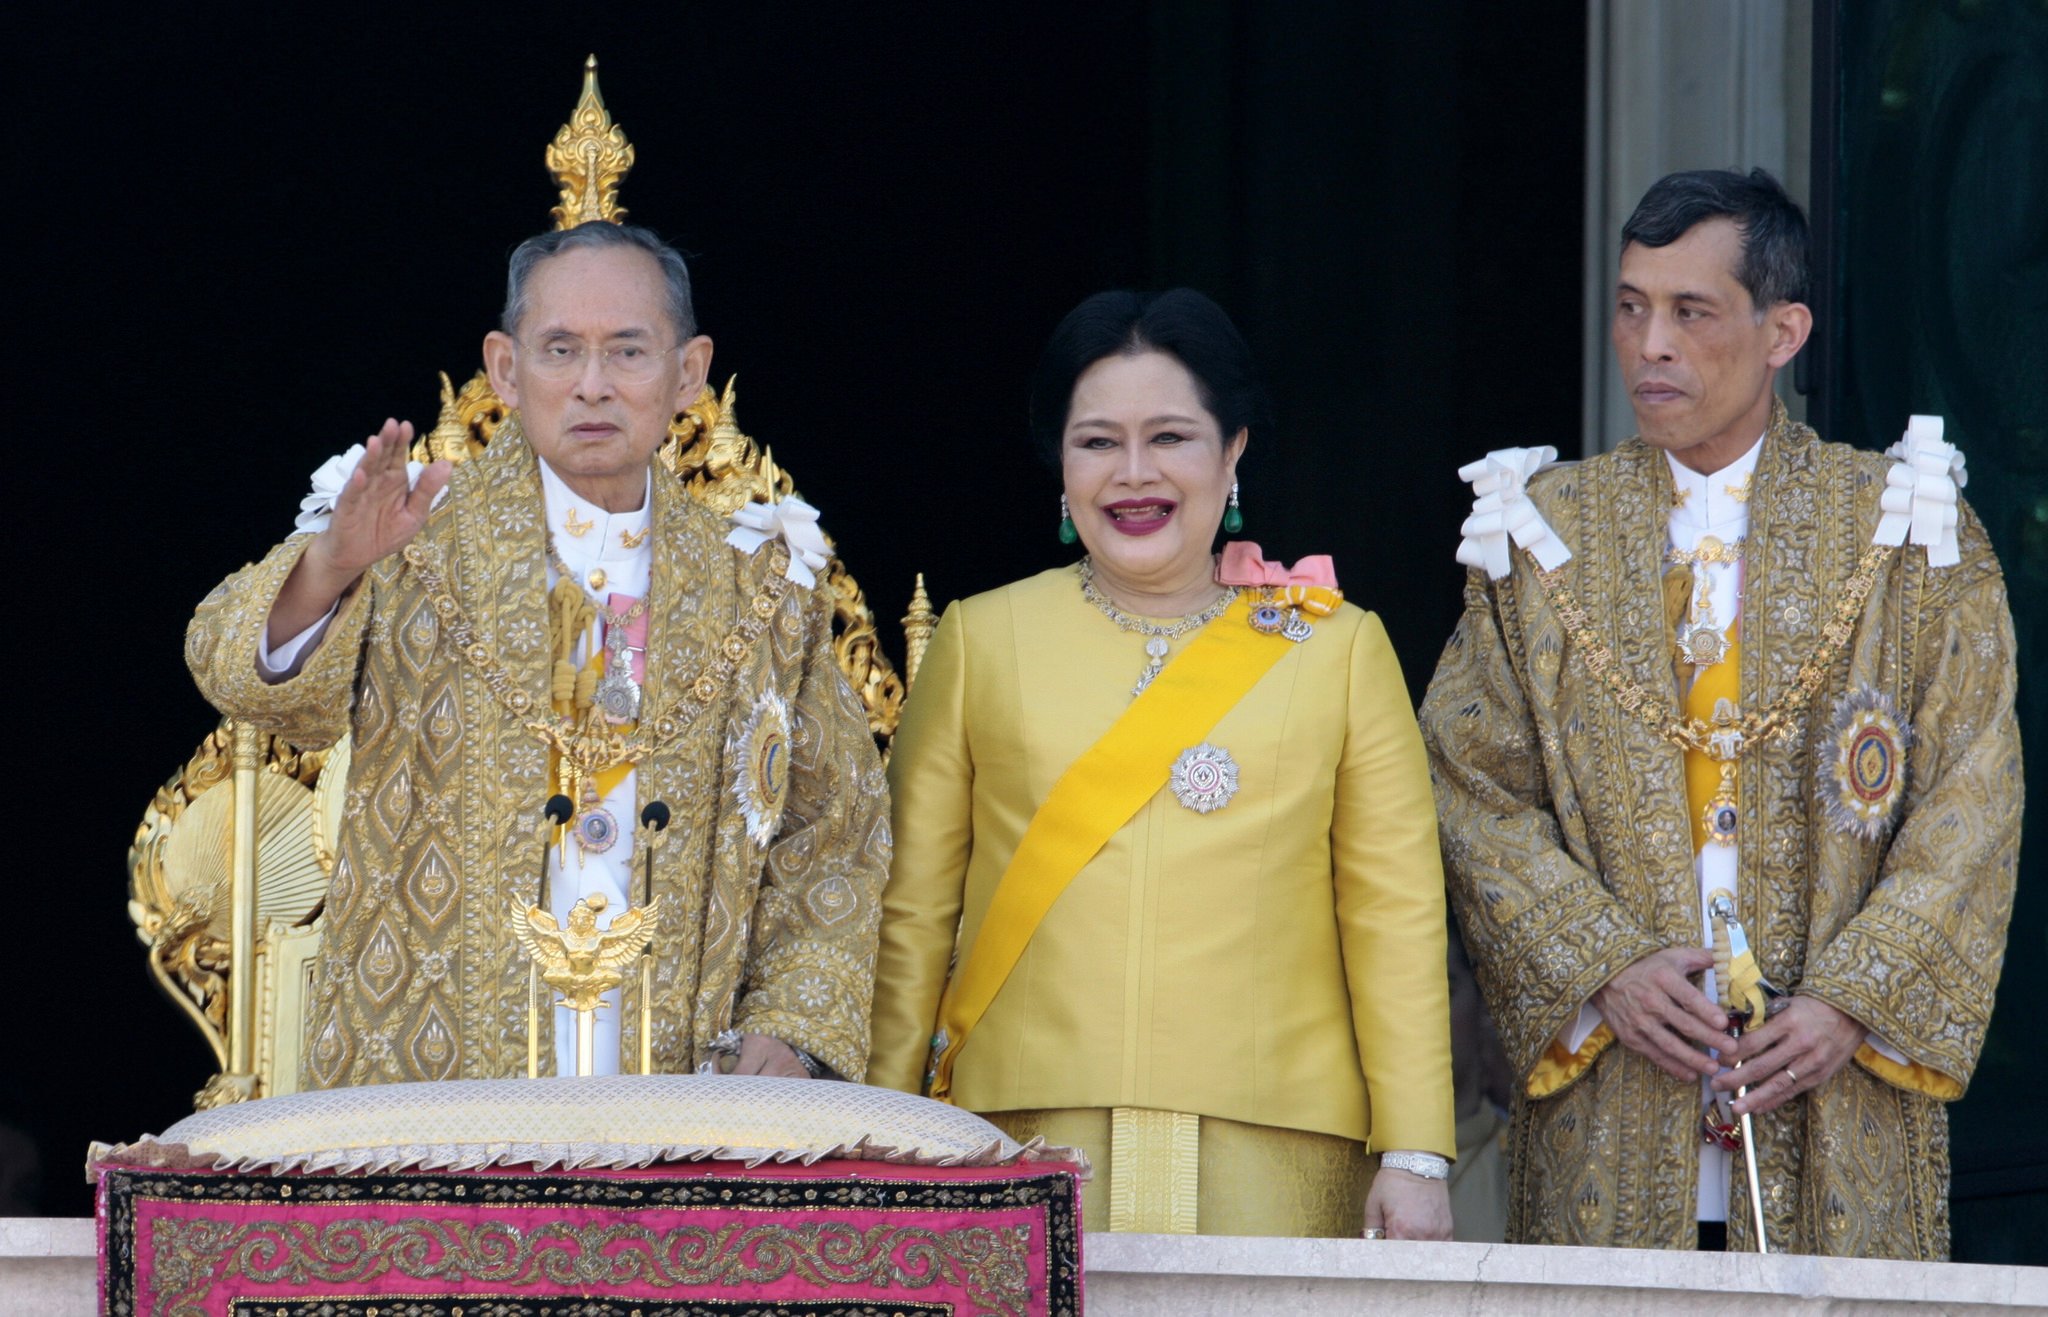 El rey tailandés vestido de mujer (y 'su' amenaza) se hacen virales